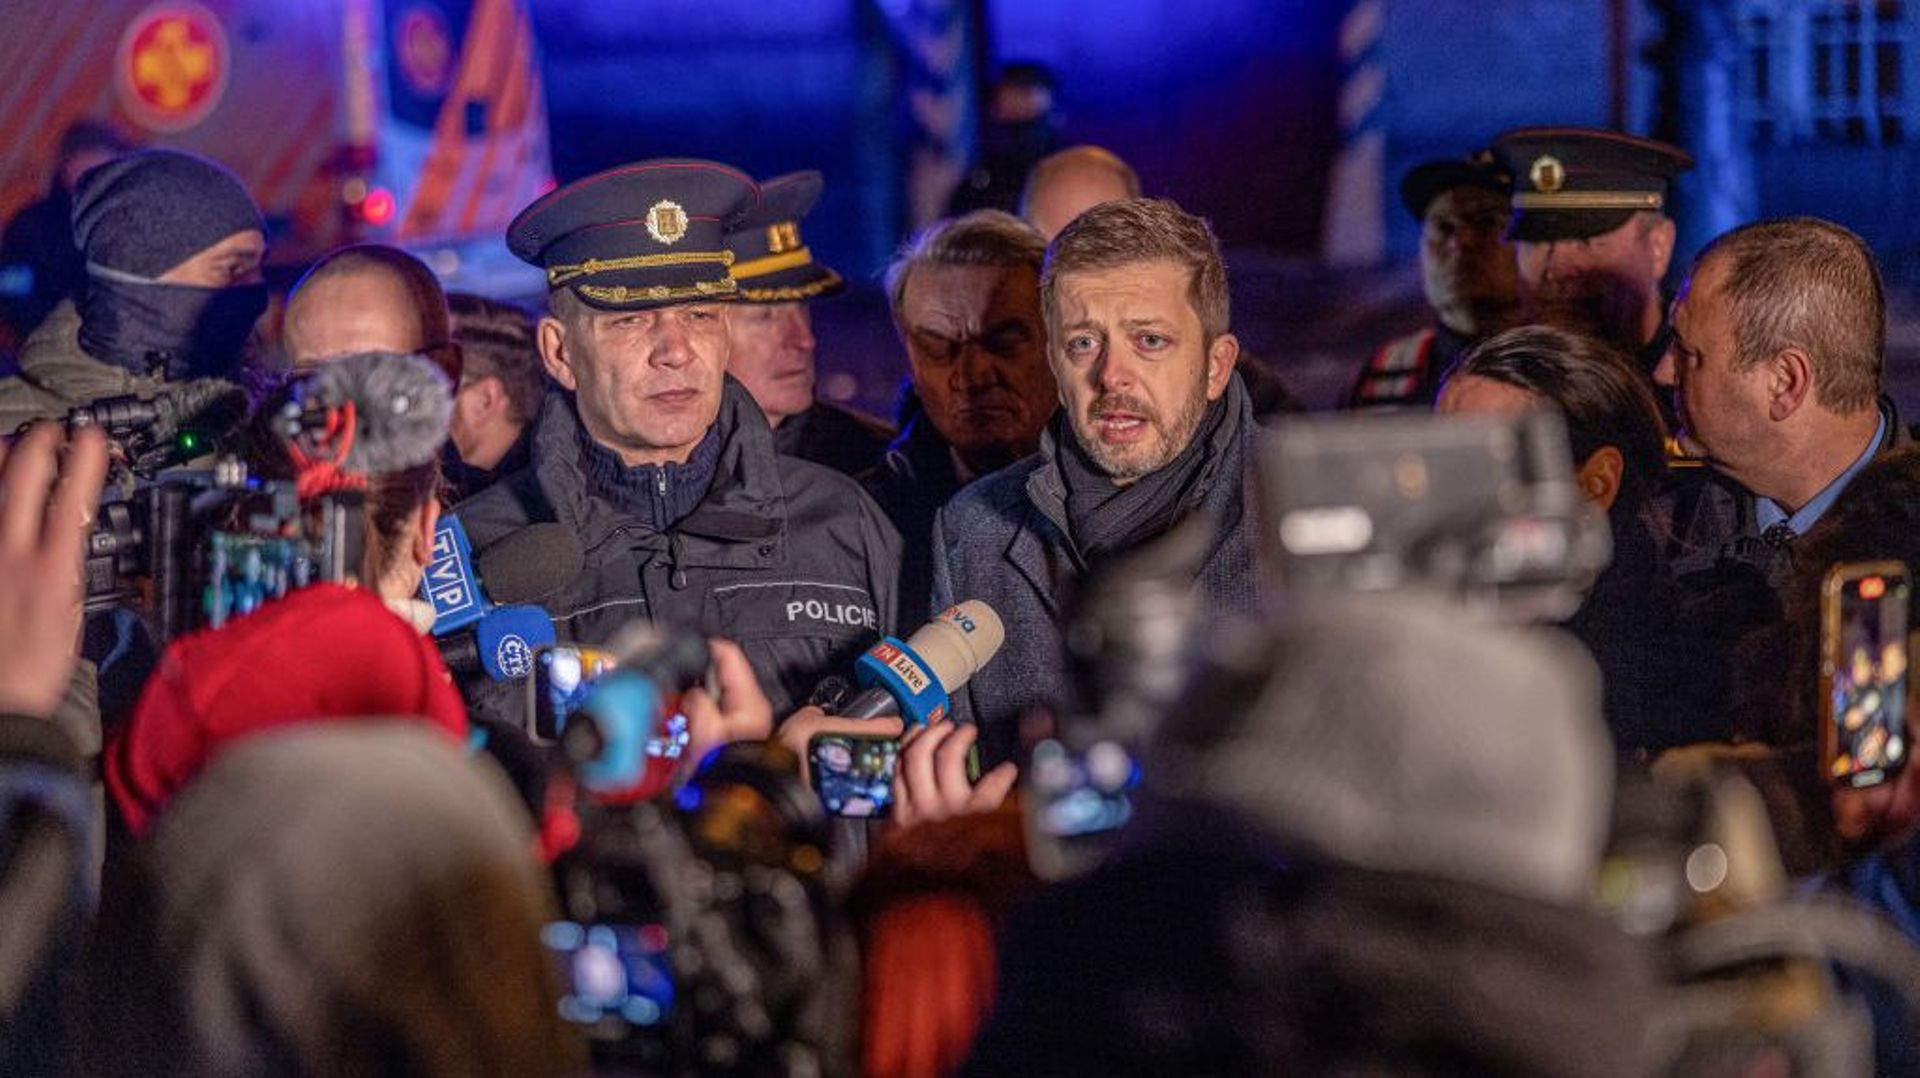 Sparatoria a Praga: la polizia ceca annuncia un bilancio rivisto di 14 morti e 25 feriti